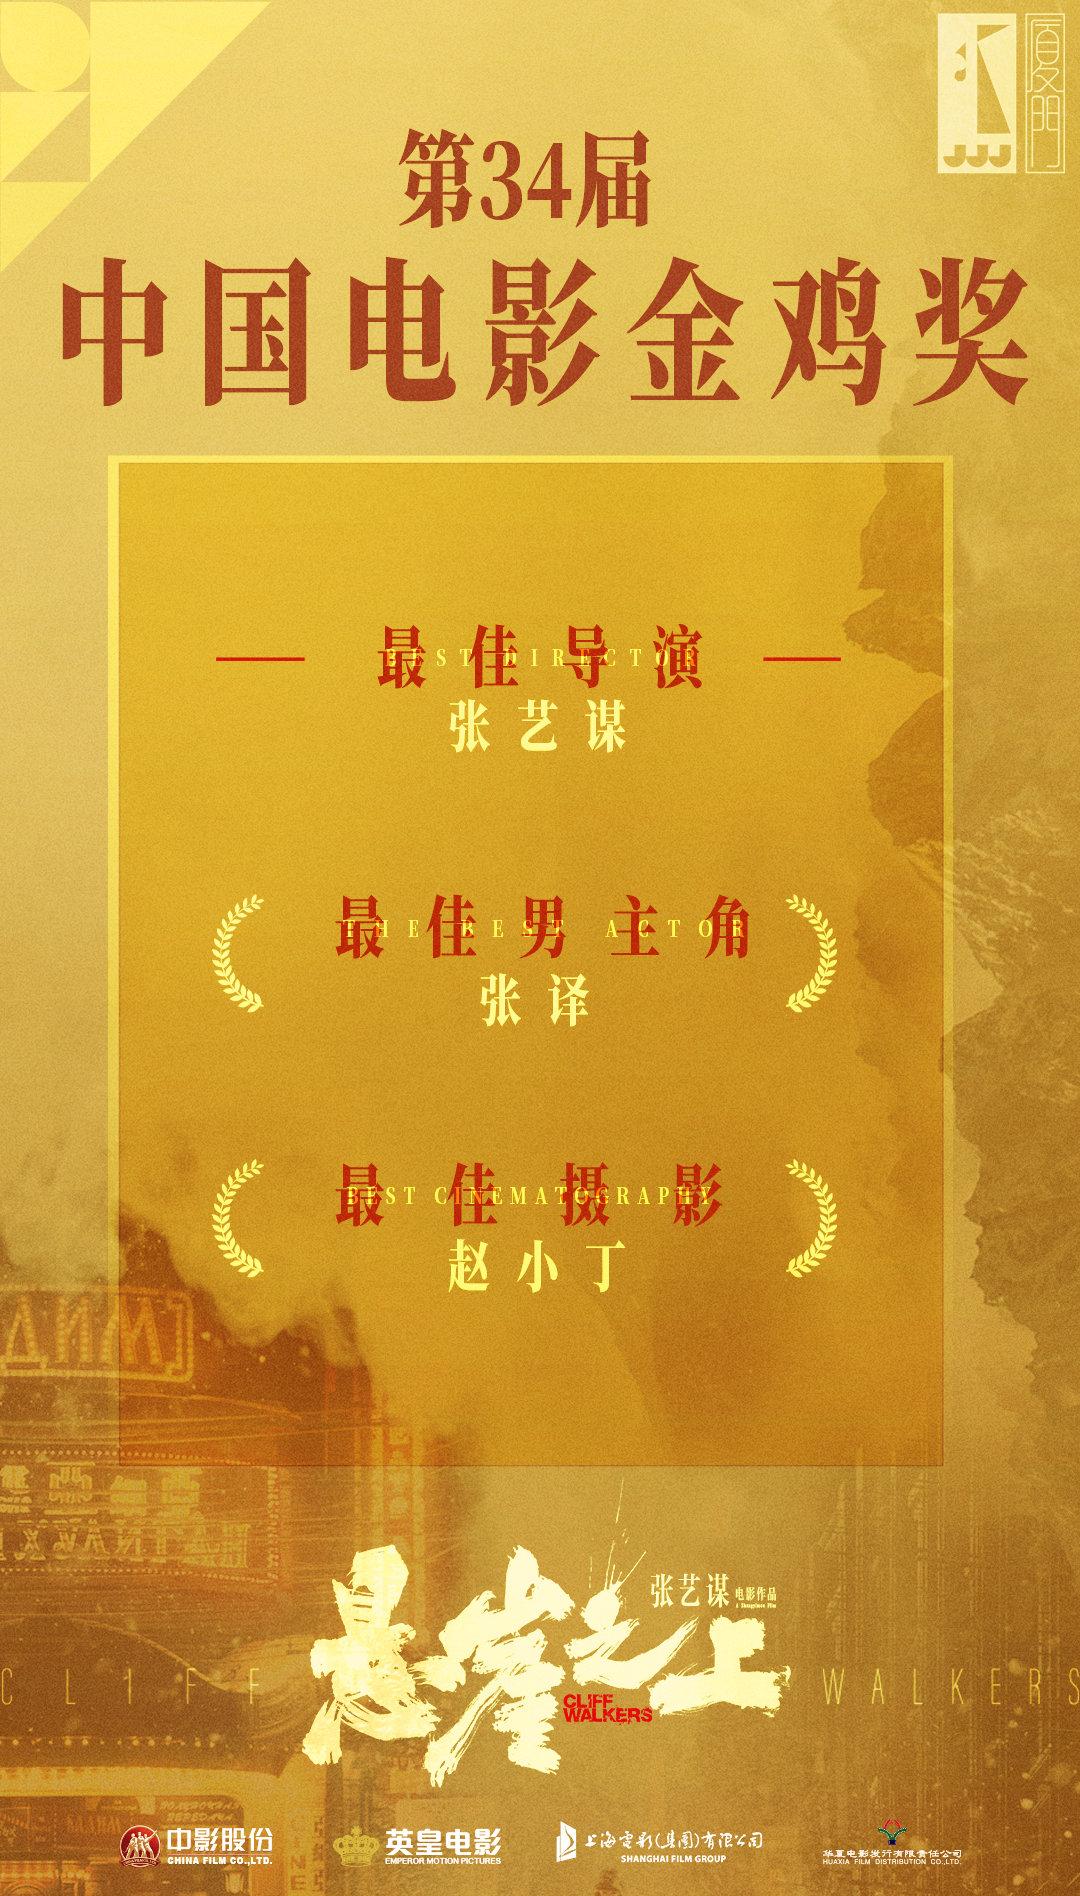 第34届中国电影金鸡奖,电影悬崖之上荣获三项大奖